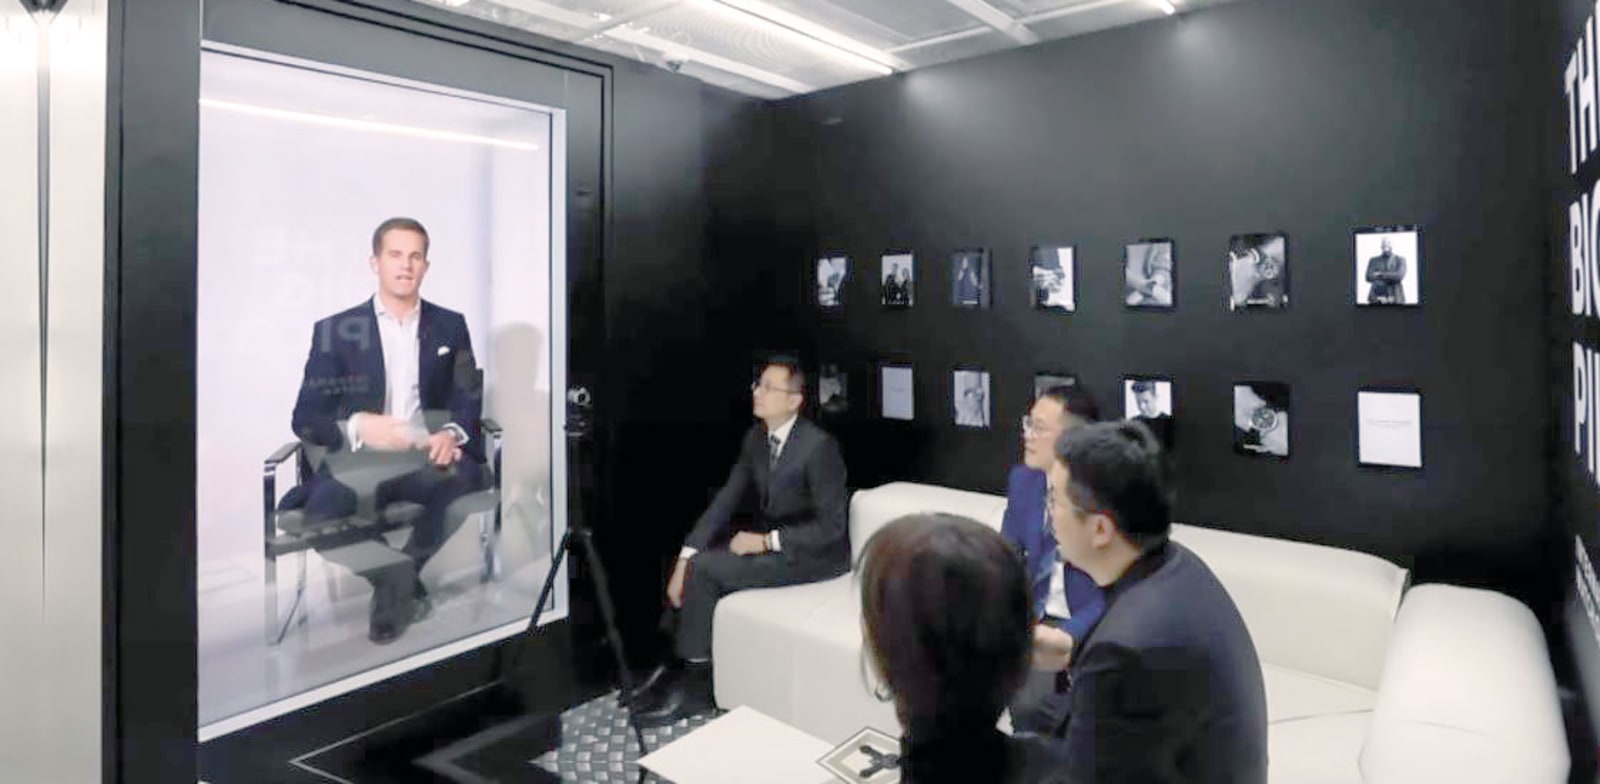 כריסטוף גריינגר־הר, מנכ”ל חברת השעונים WSI, מופיע כהולוגרמה / צילום: צילום מסך מתוך סרטון וידאו של Portl